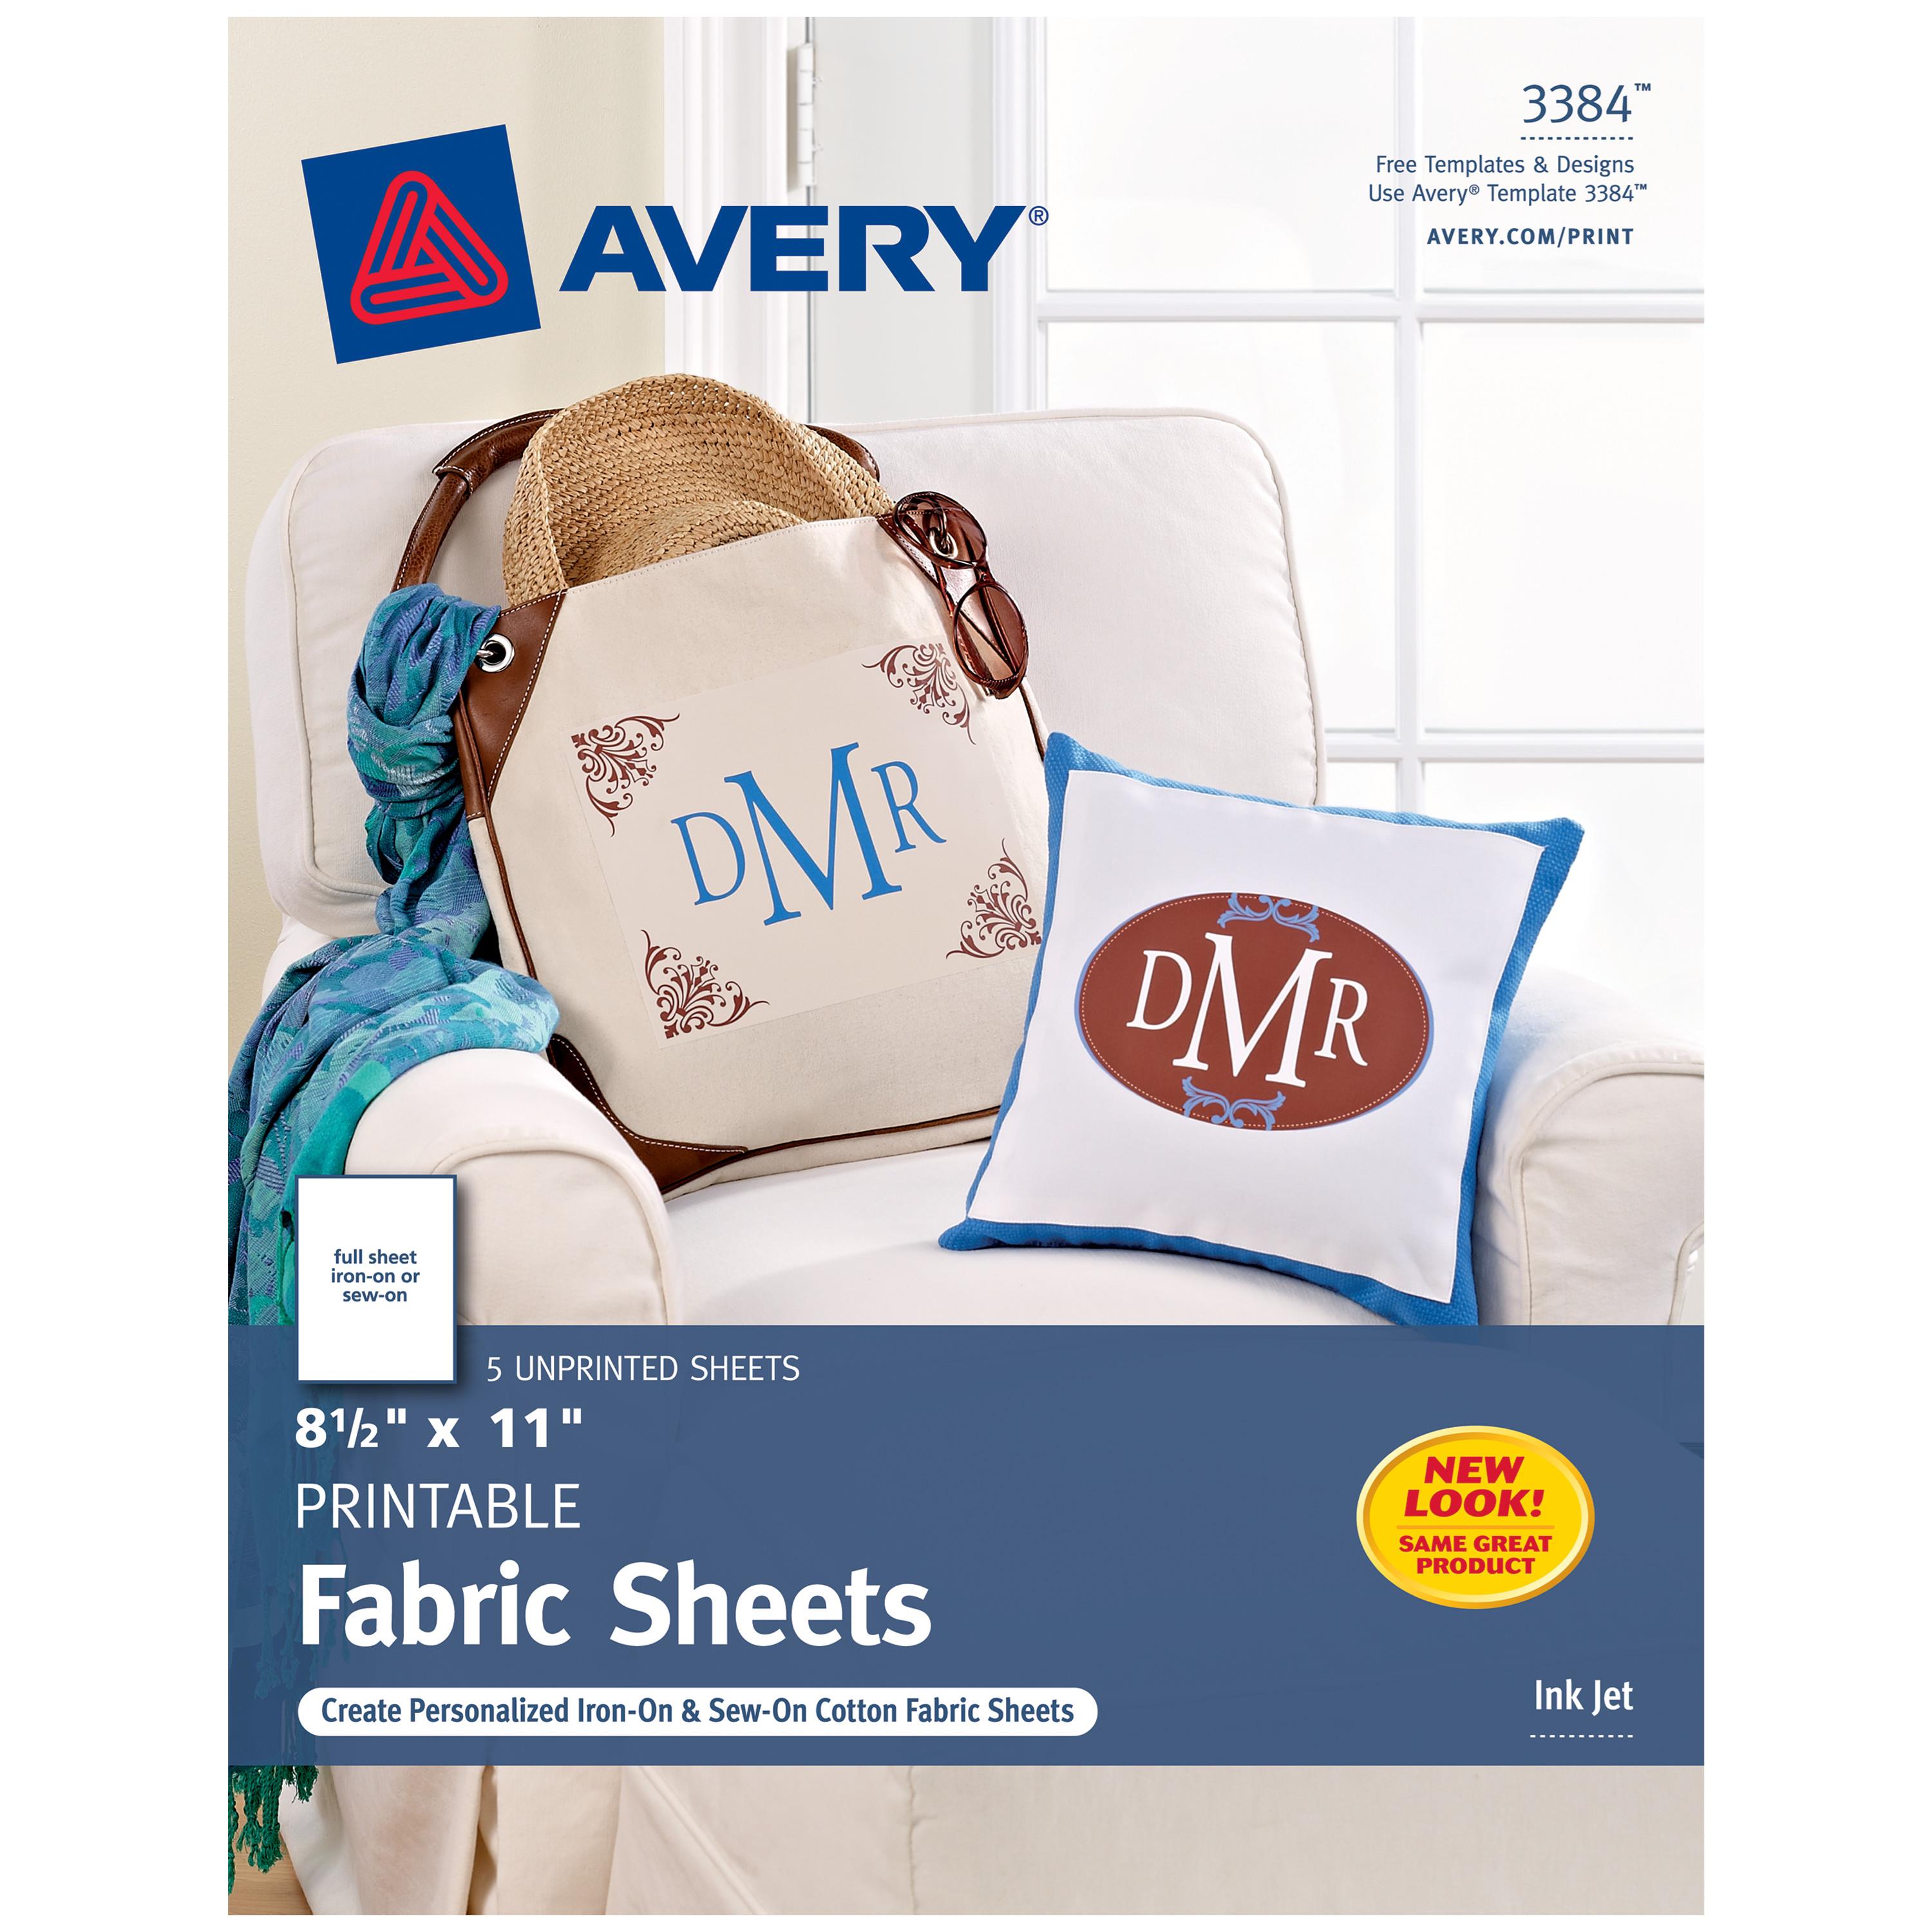  Inkjet Fabric Sheets